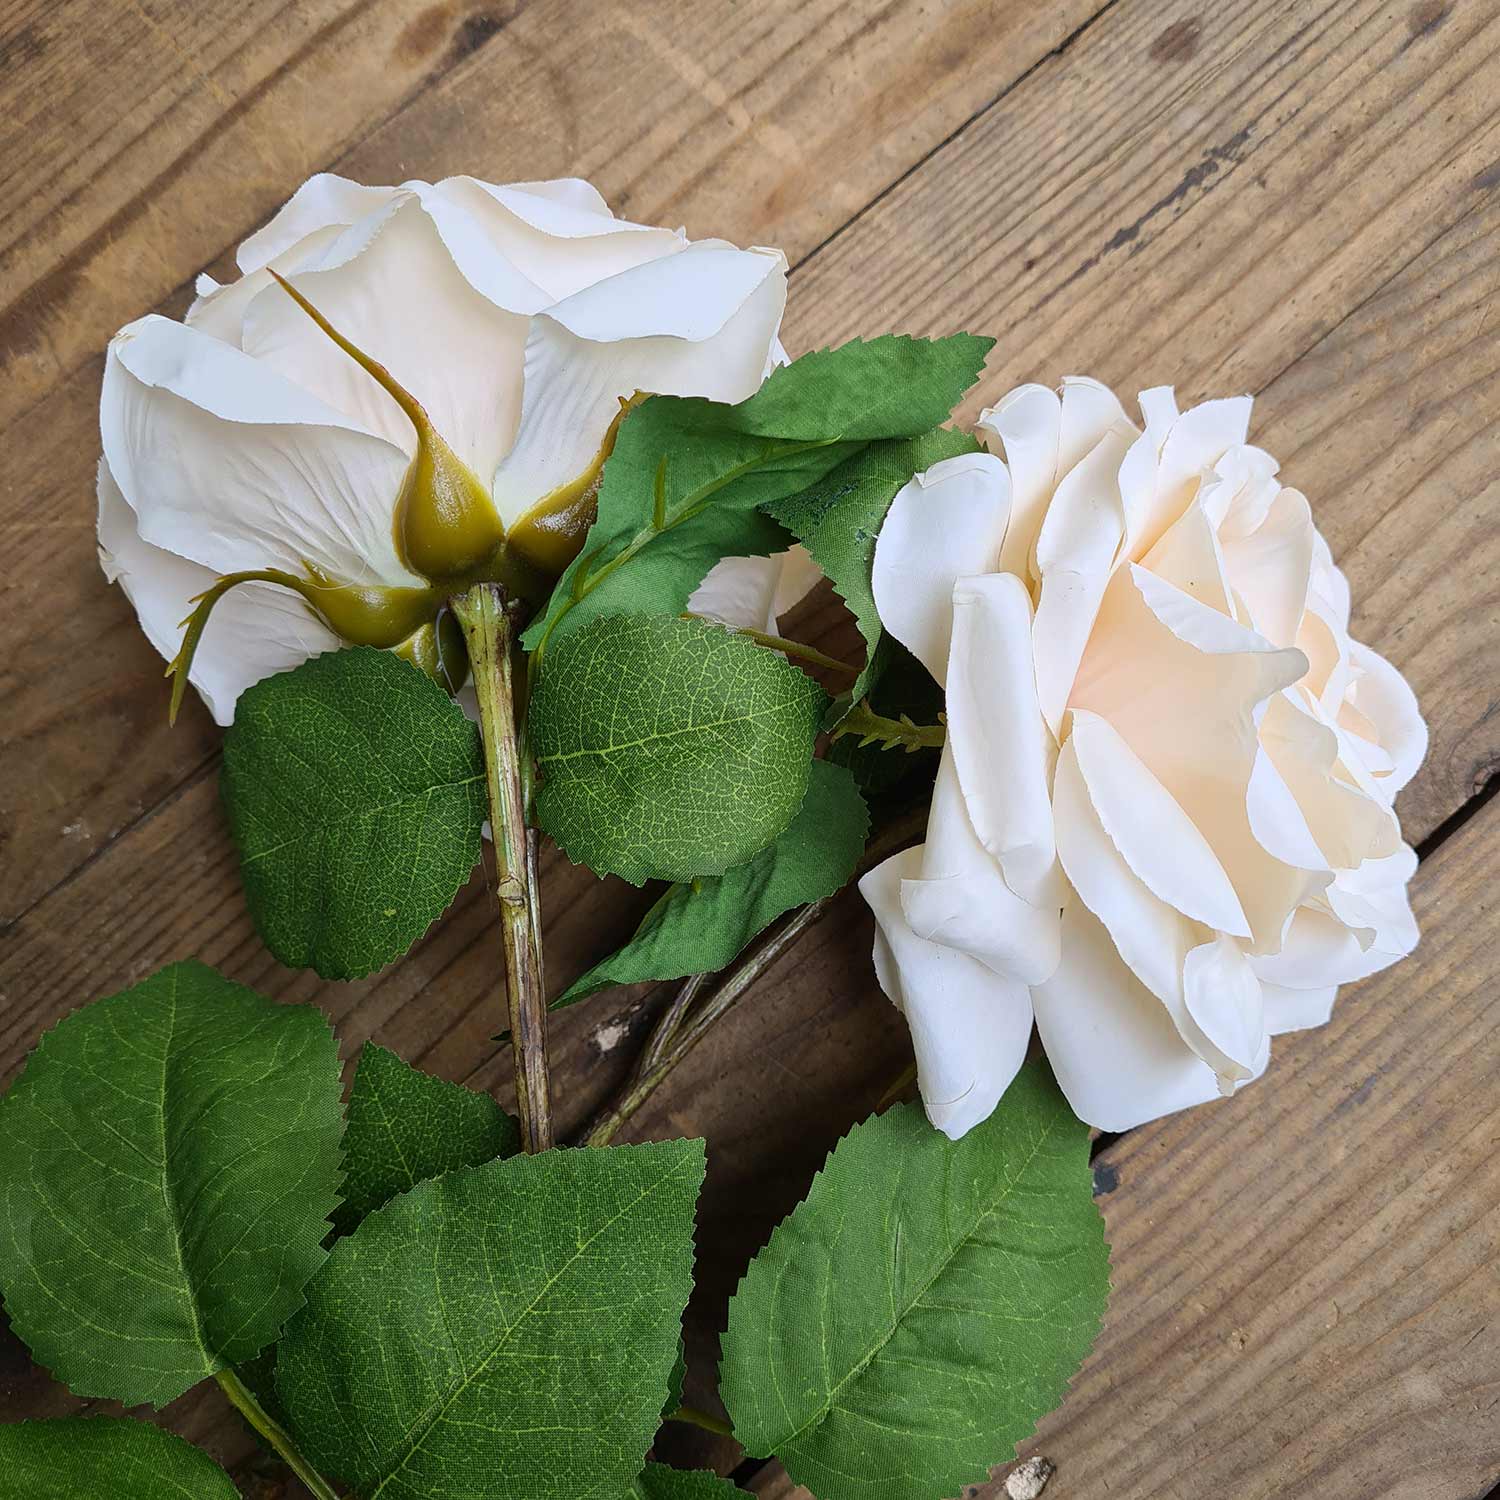 Rózsa művirág, nyílt vanília színű virágfejjel.